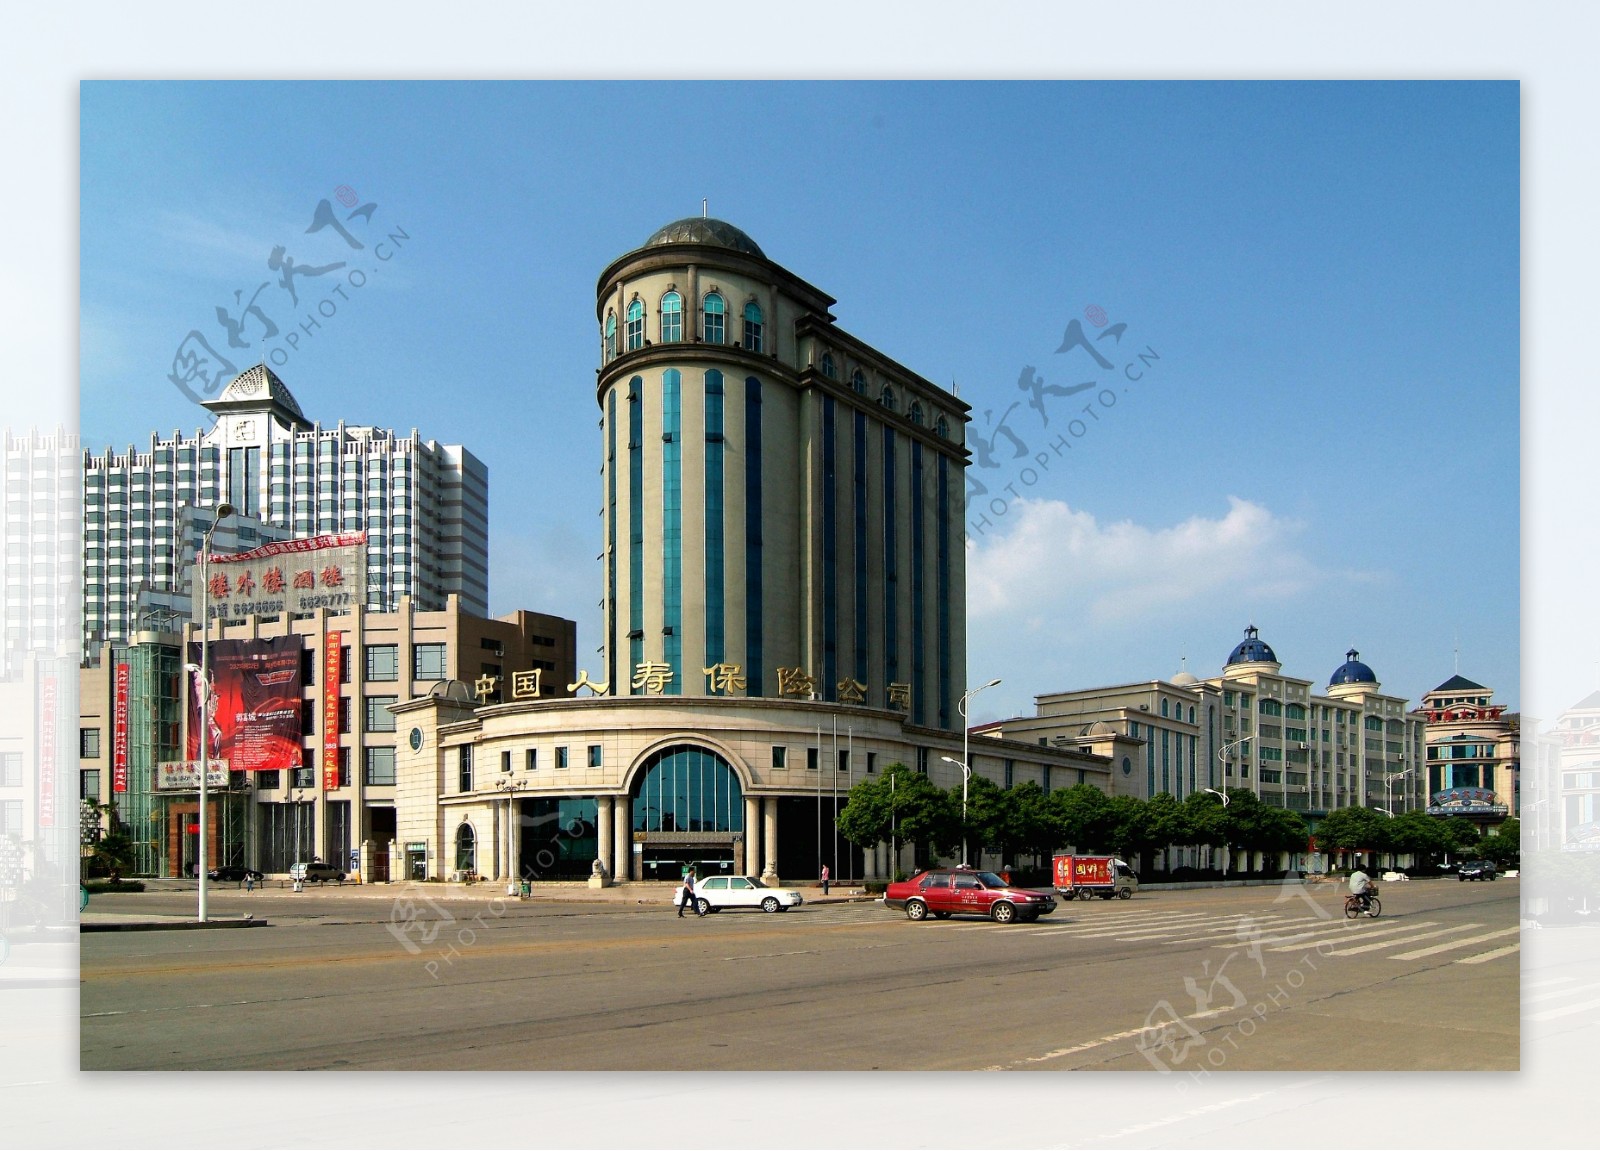 萍乡市人寿保险公司大楼图片